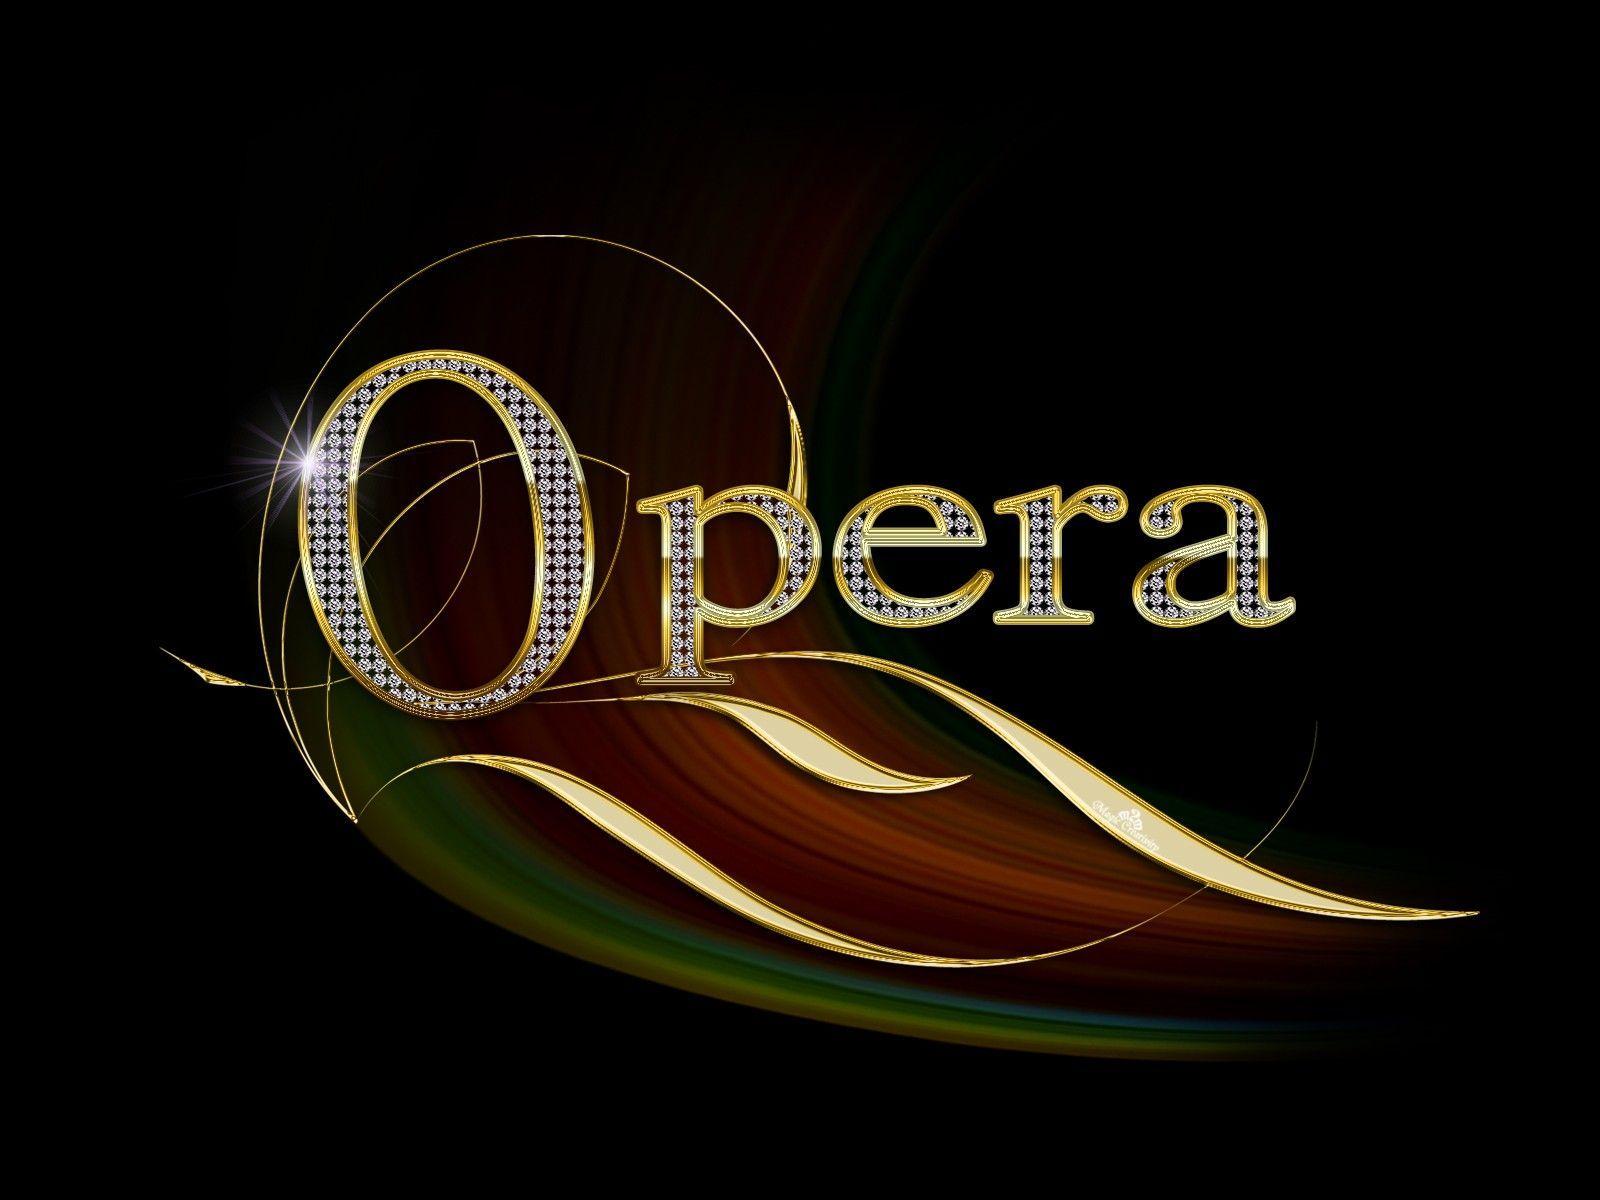 opera gx mobile wallpaper